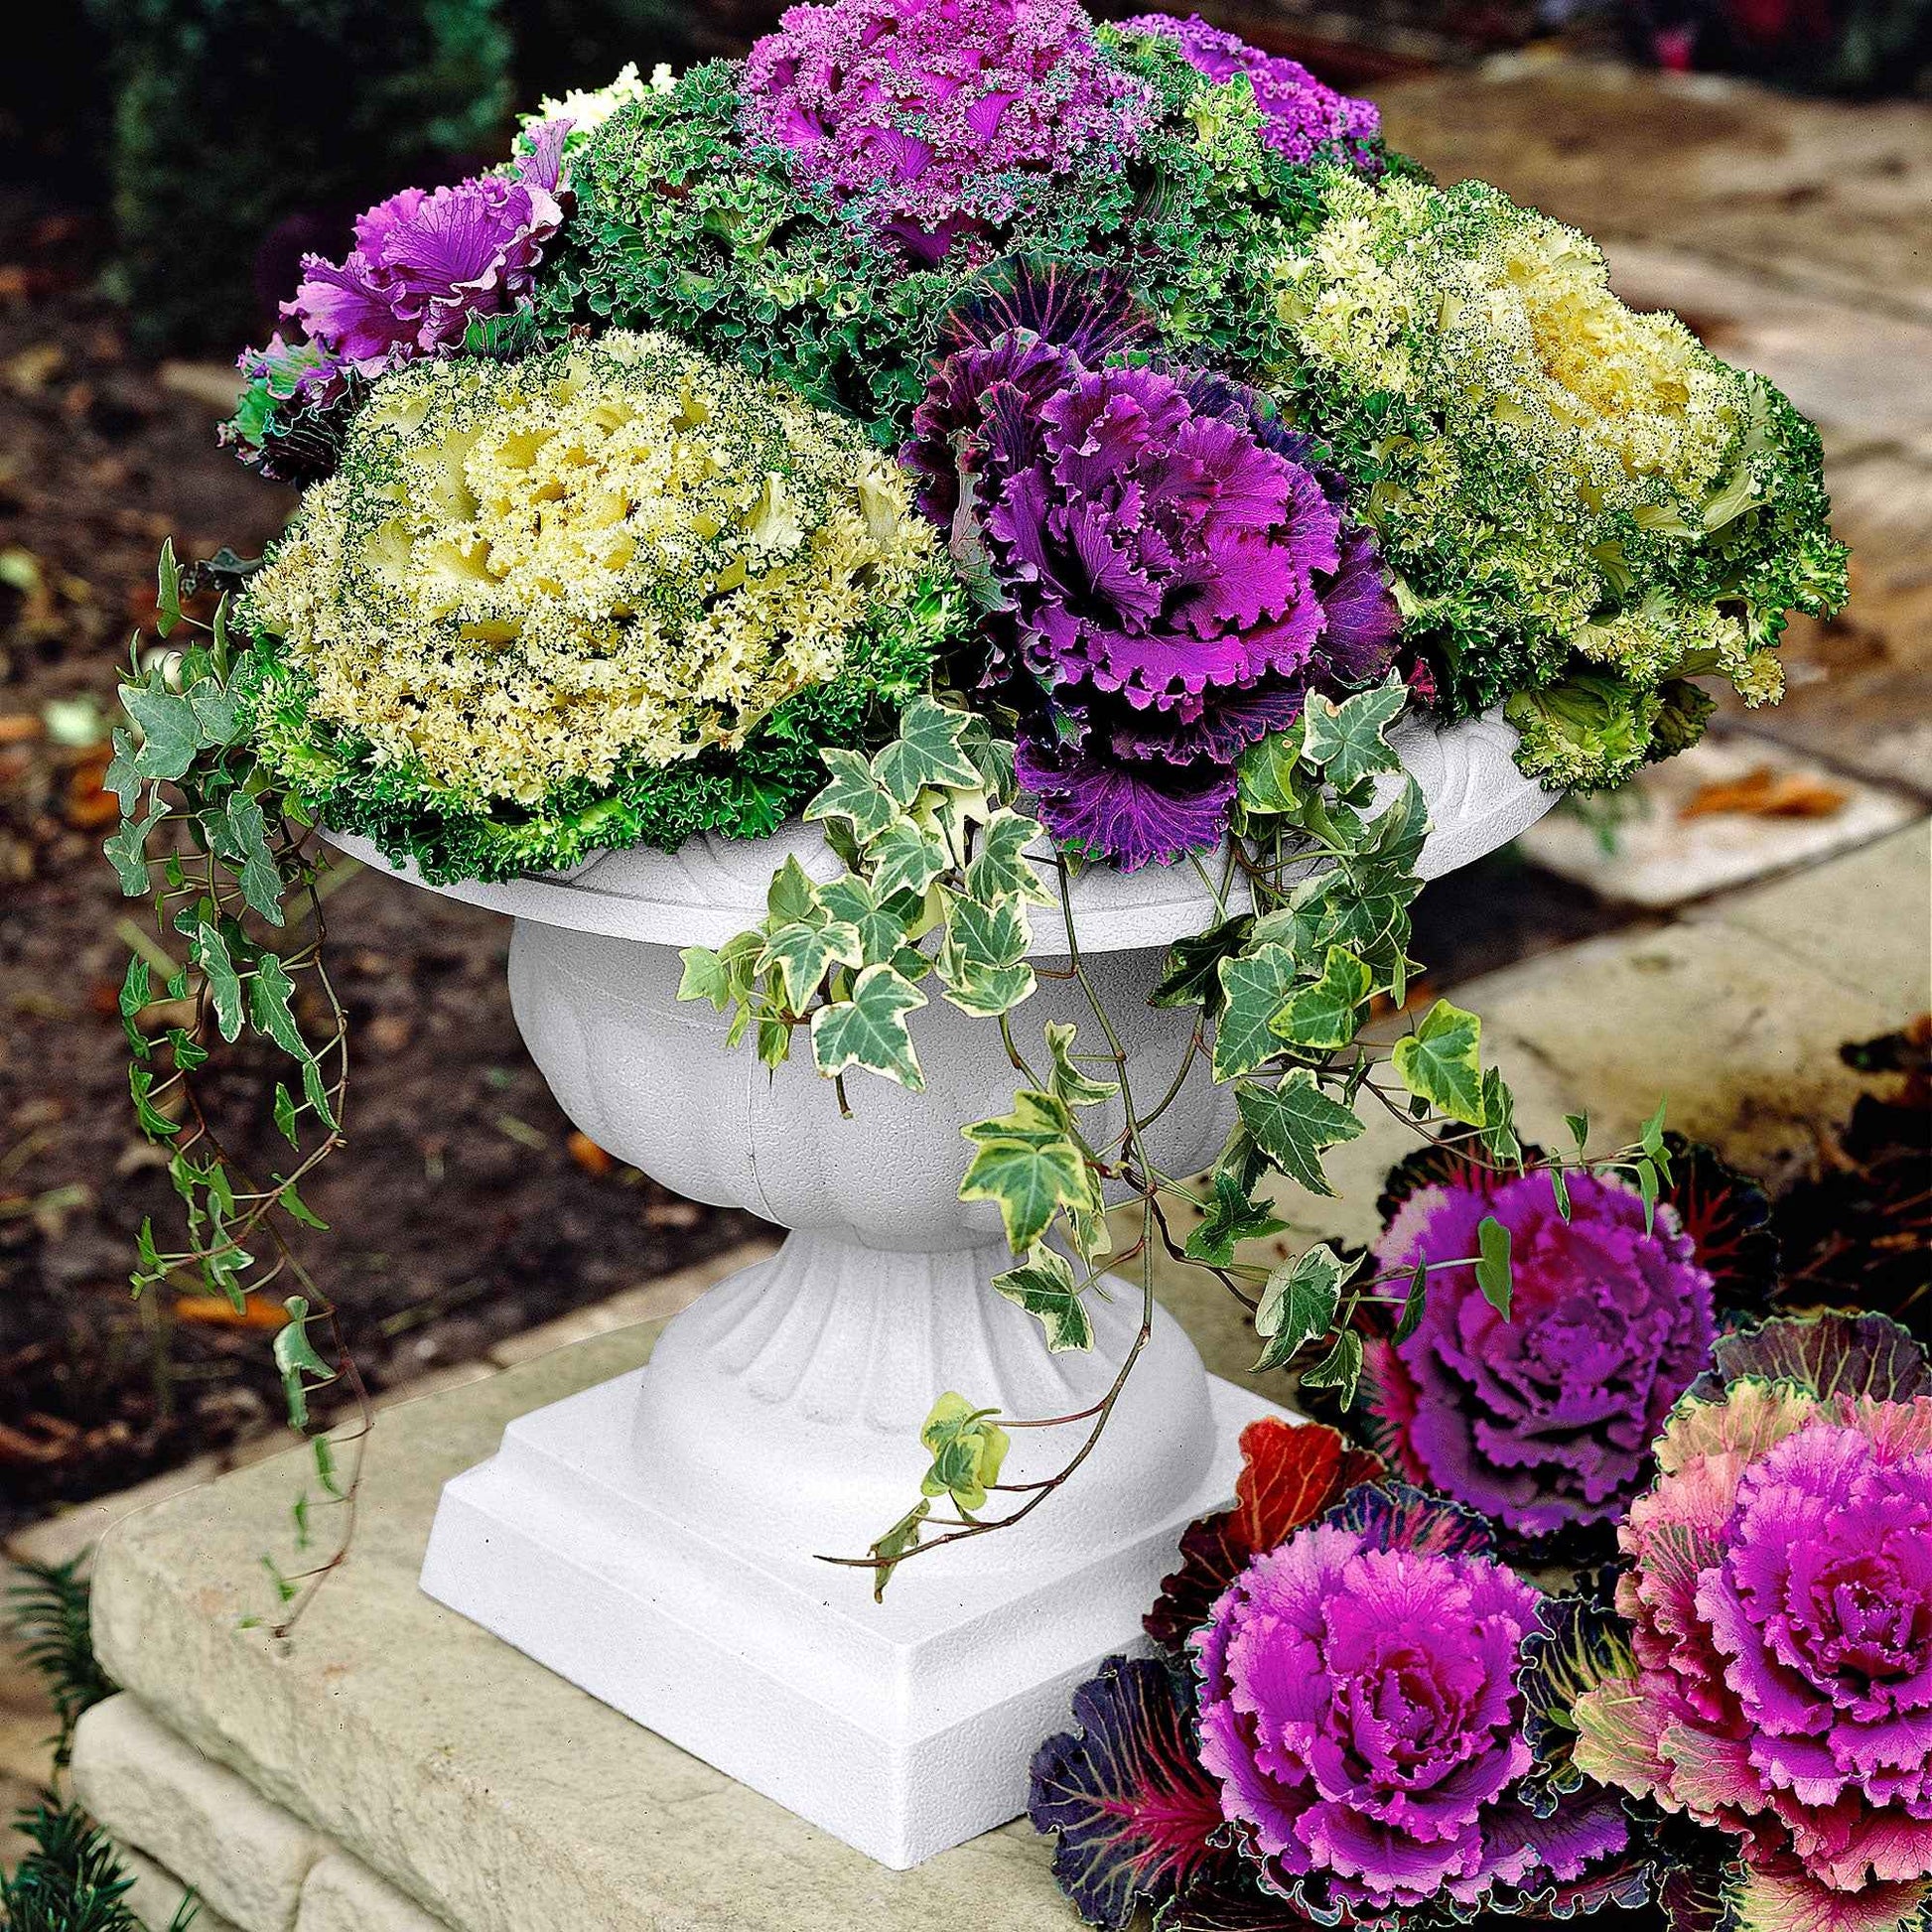 3x Chou d'ornement Brassica - Mélange 'Three colors' violet-blanc-vert - Caractéristiques des plantes